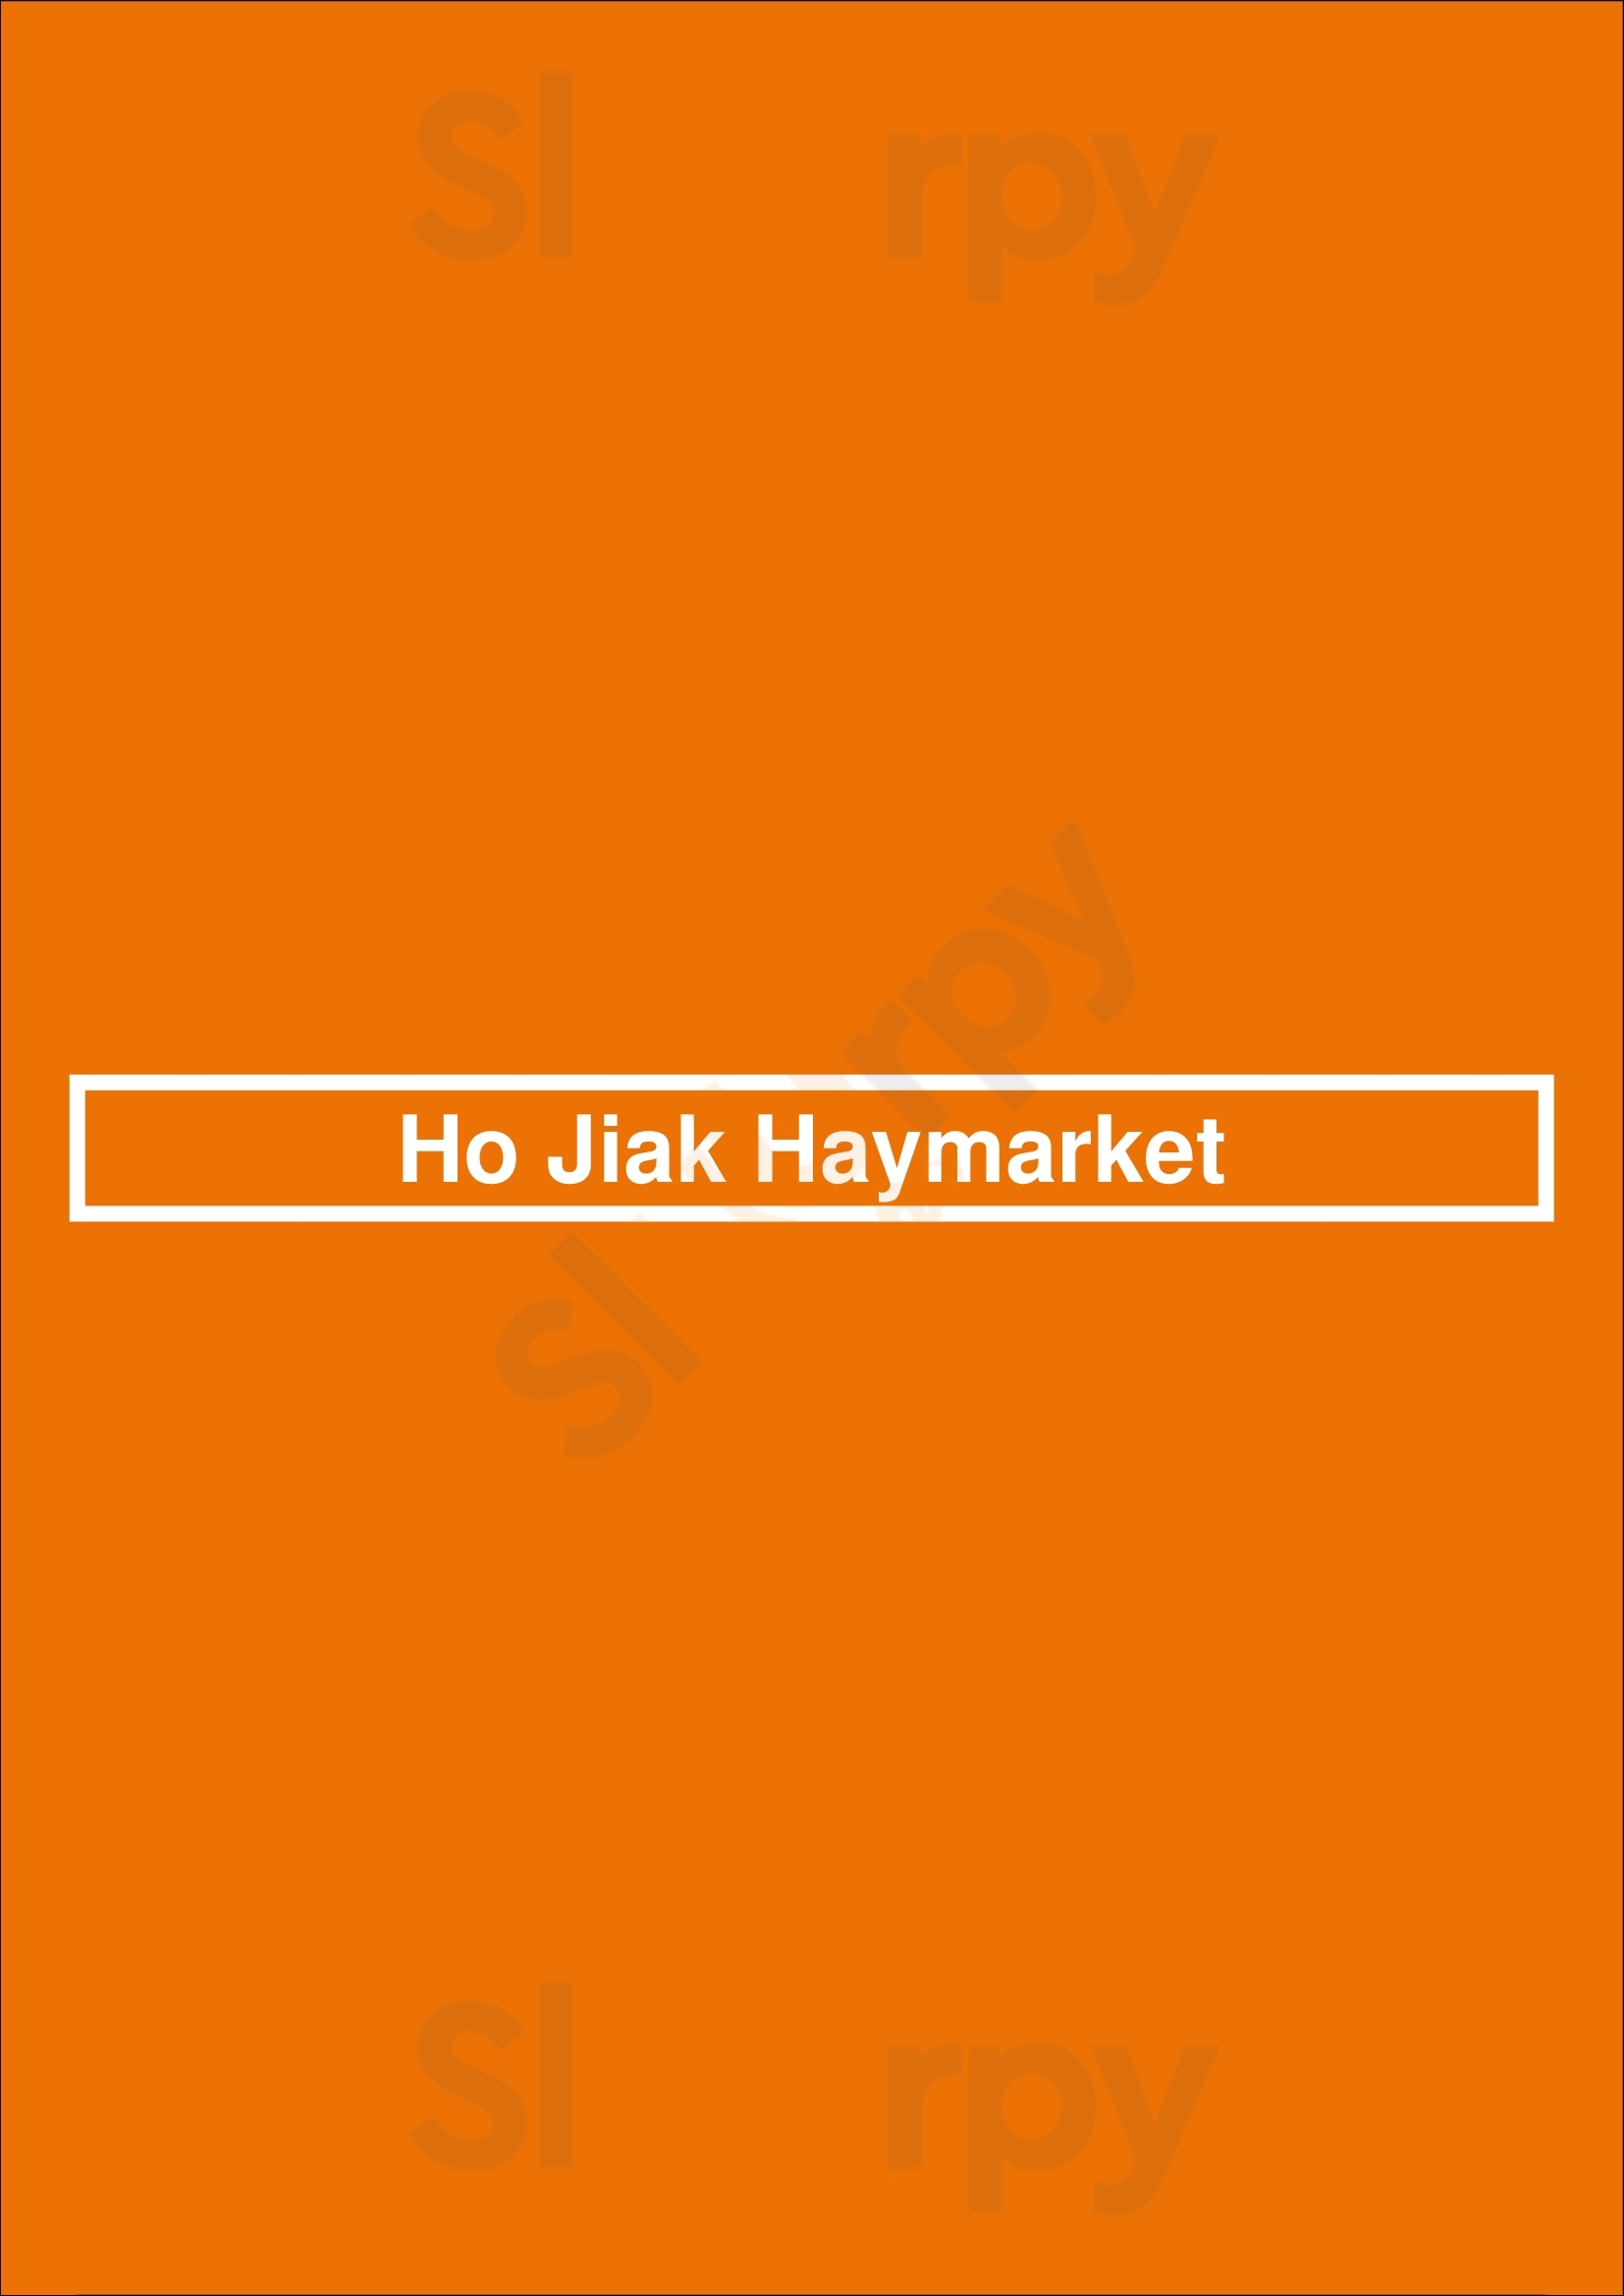 Ho Jiak Haymarket Sydney Menu - 1